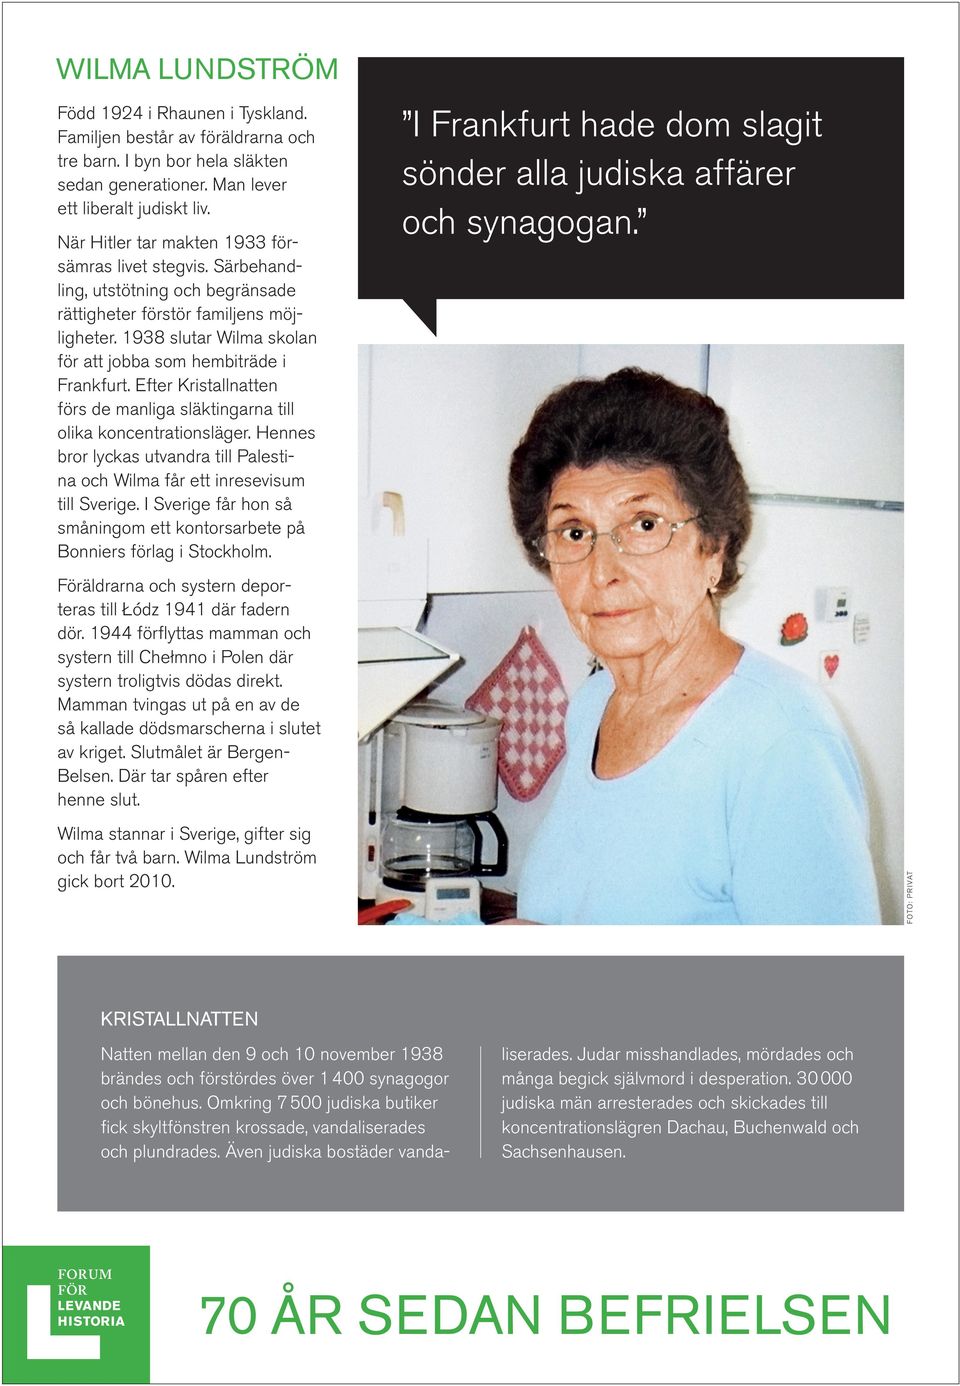 1938 slutar Wilma skolan för att jobba som hembiträde i Frankfurt. Efter Kristallnatten förs de manliga släktingarna till olika koncentrationsläger.